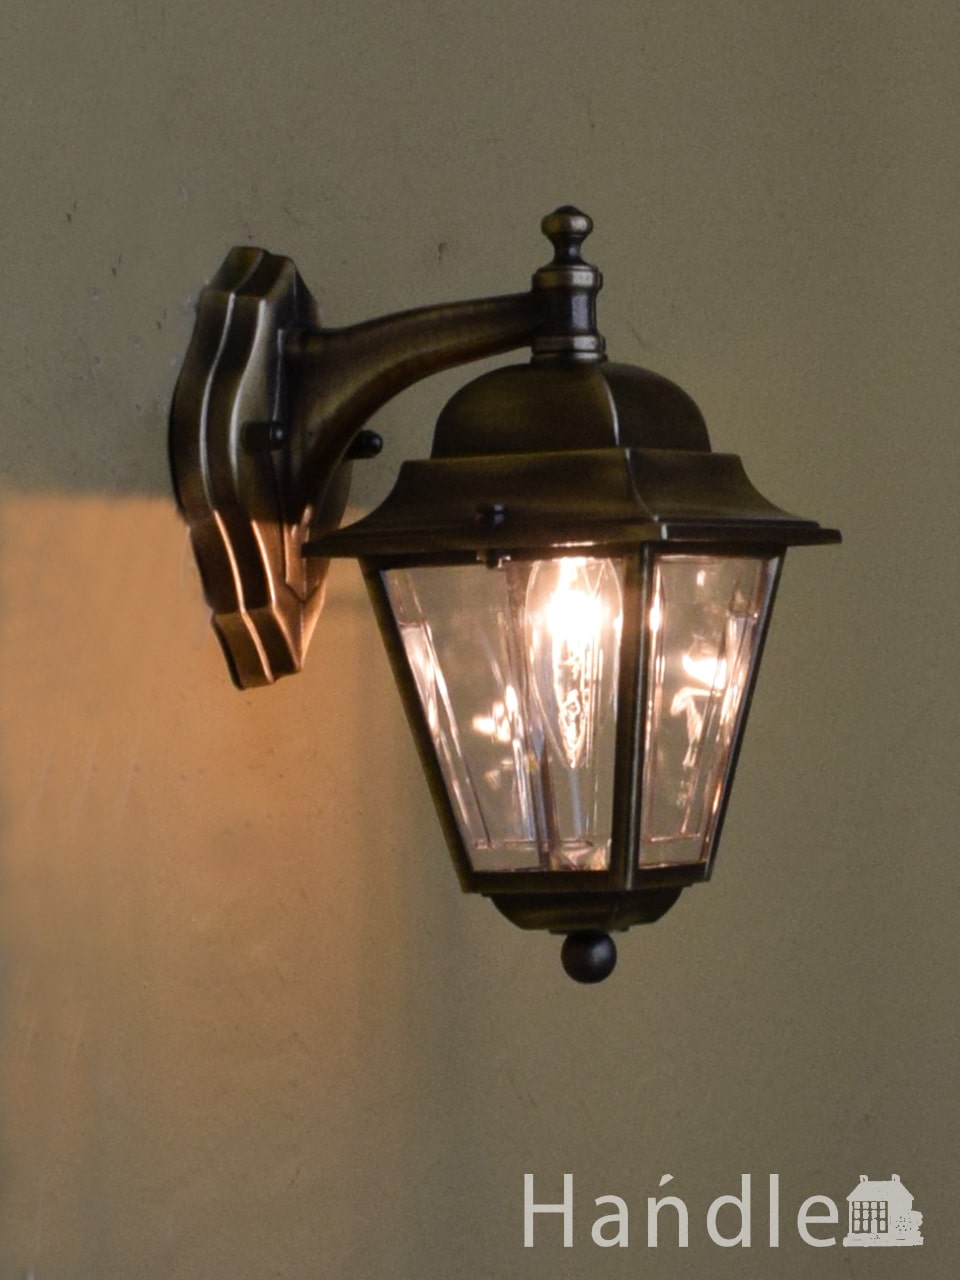 フレンチスタイルのおしゃれなエクステリアランプ、ランタンタイプの外灯 (wr-148)